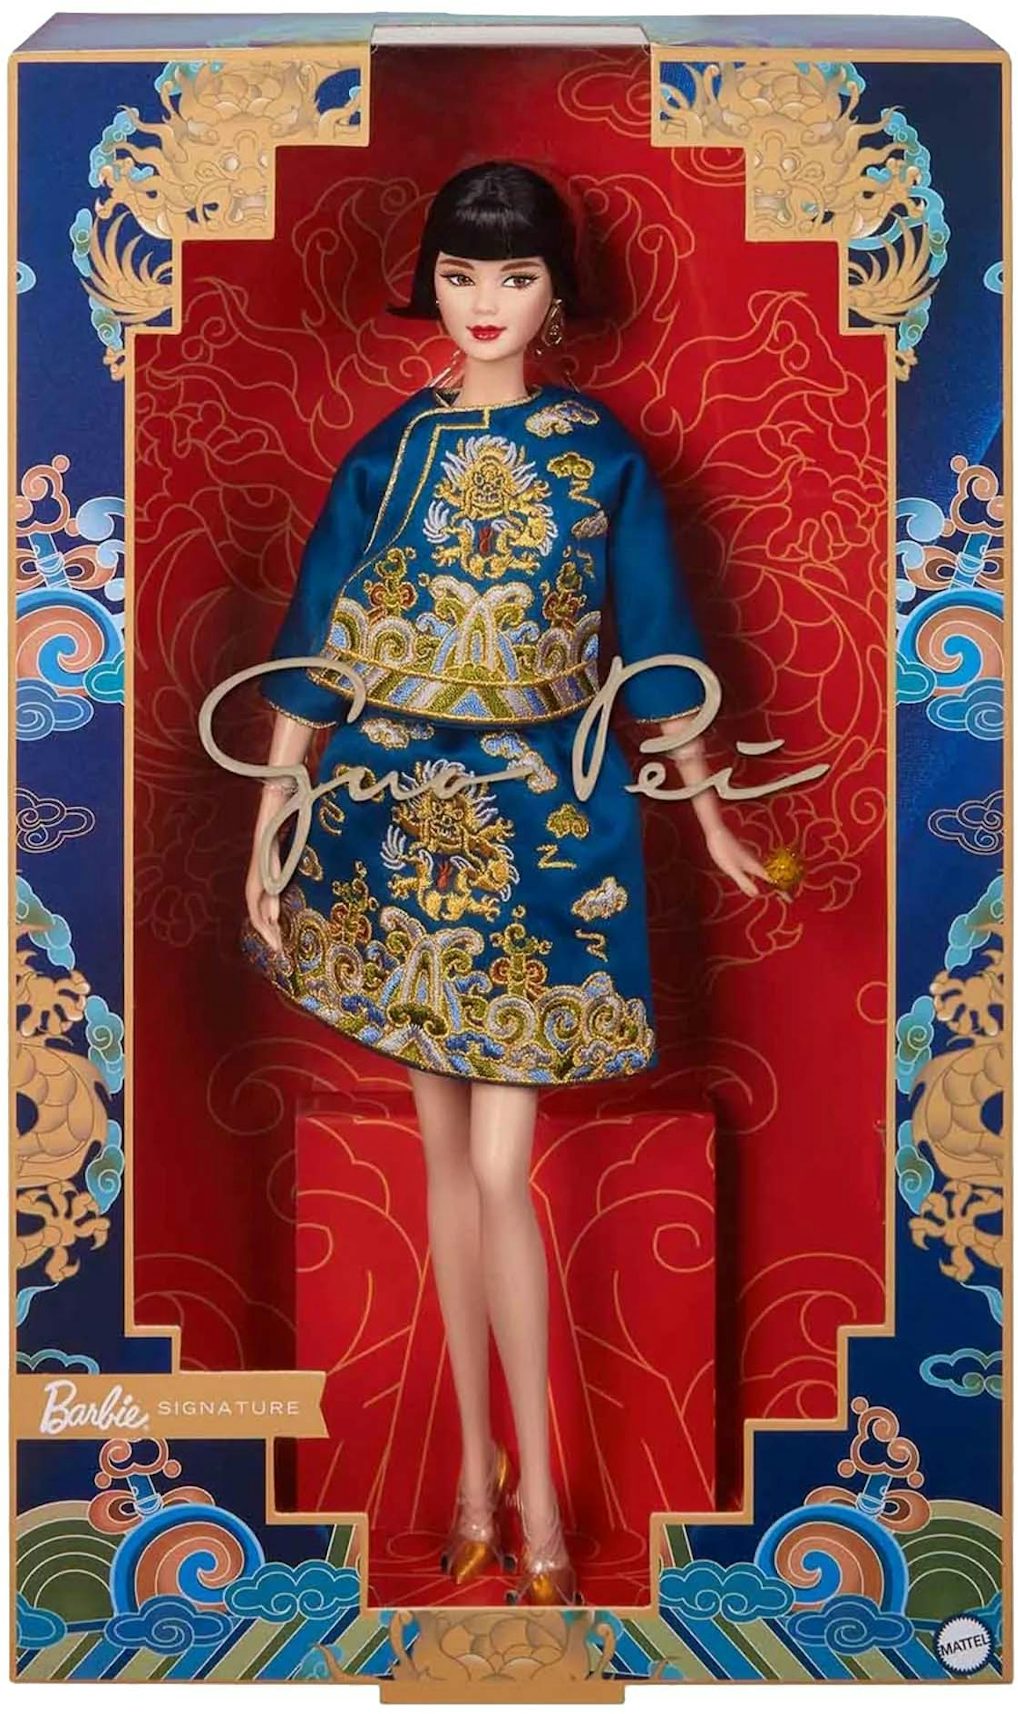 Original Barbies Dolls, Lunar New Year Barbie